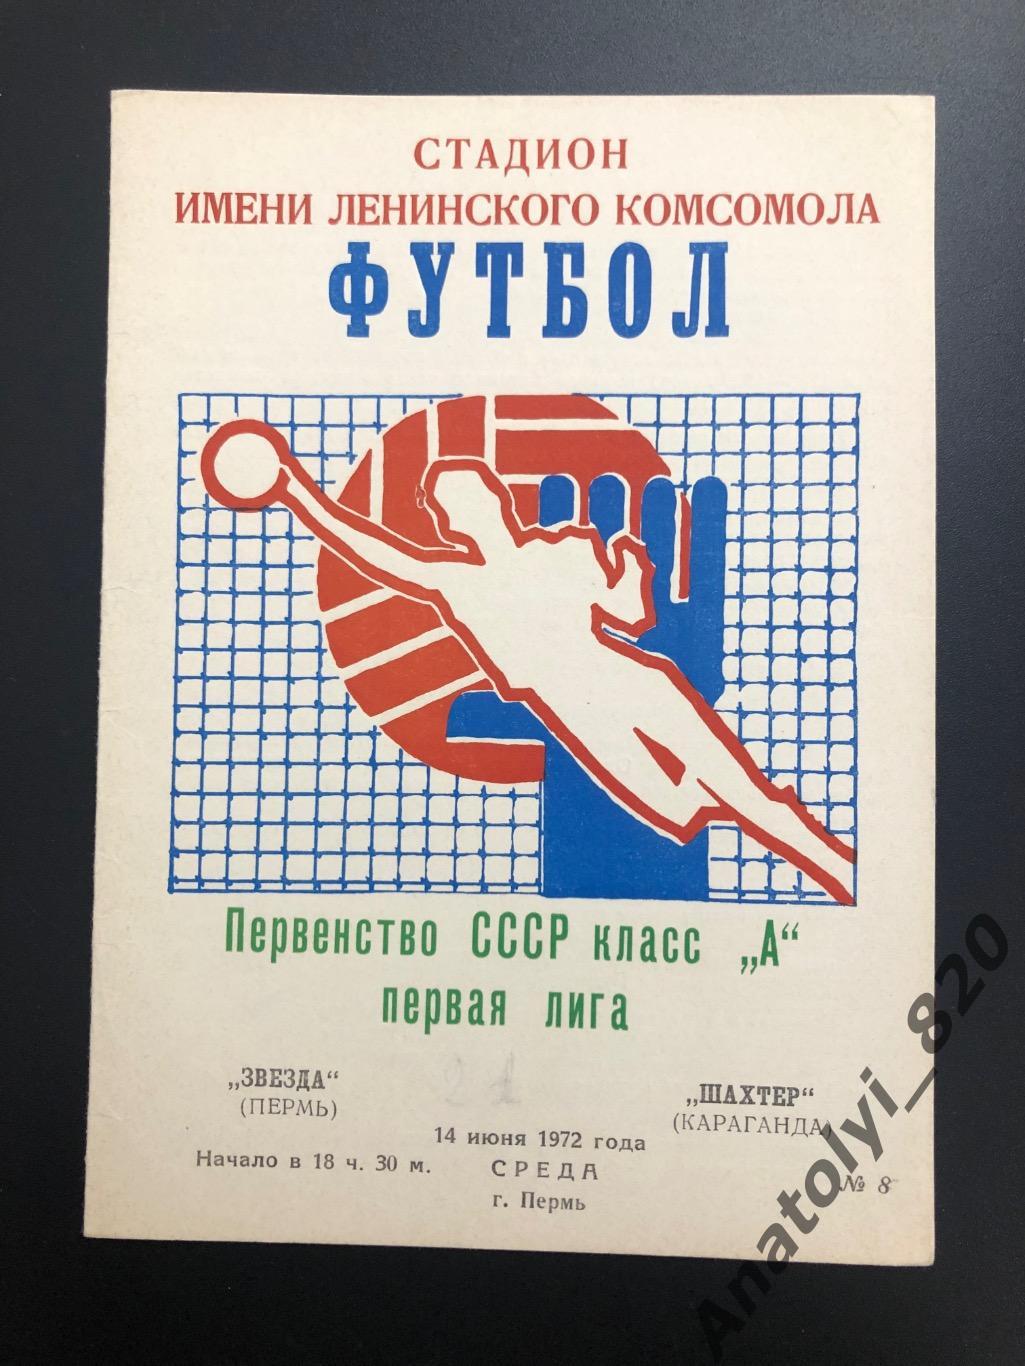 Звезда Пермь - Шахтёр Караганда, 1972 год